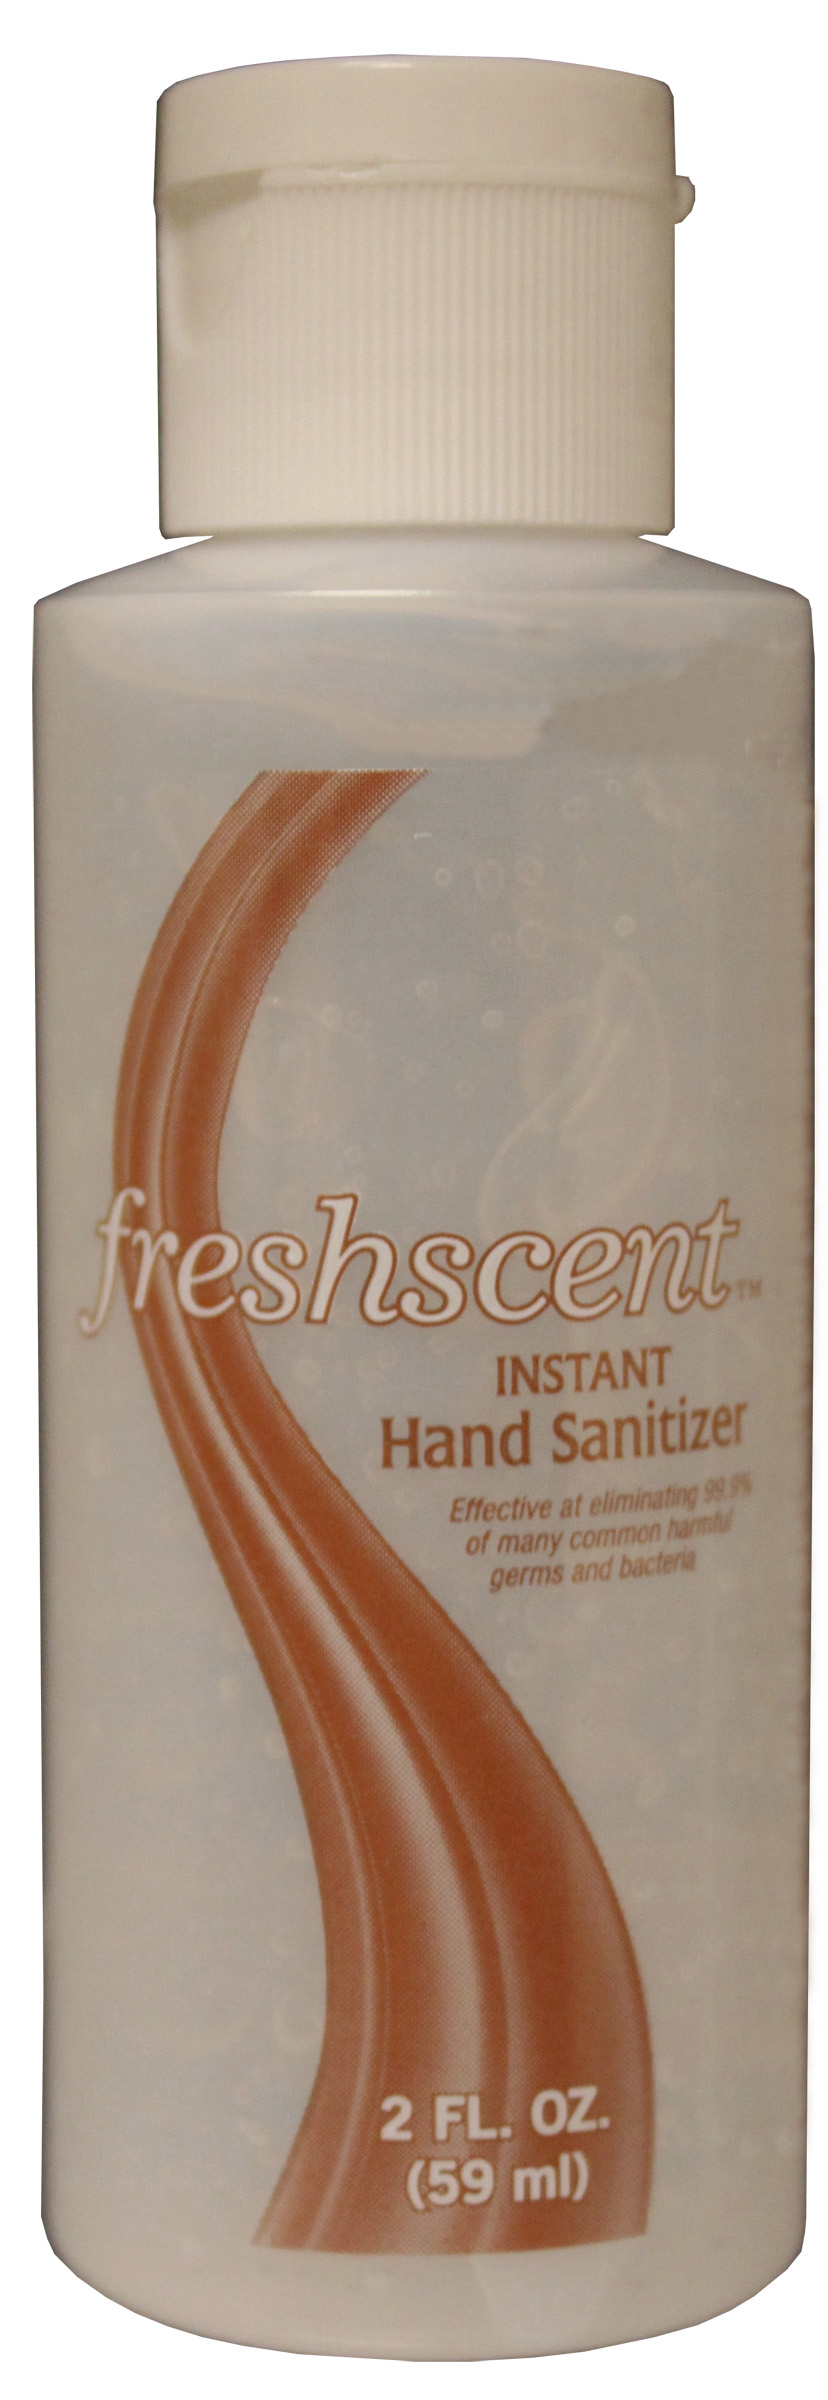 Freshscent 2 oz. Hand Sanitizer (70% Ethyl Alcohol)